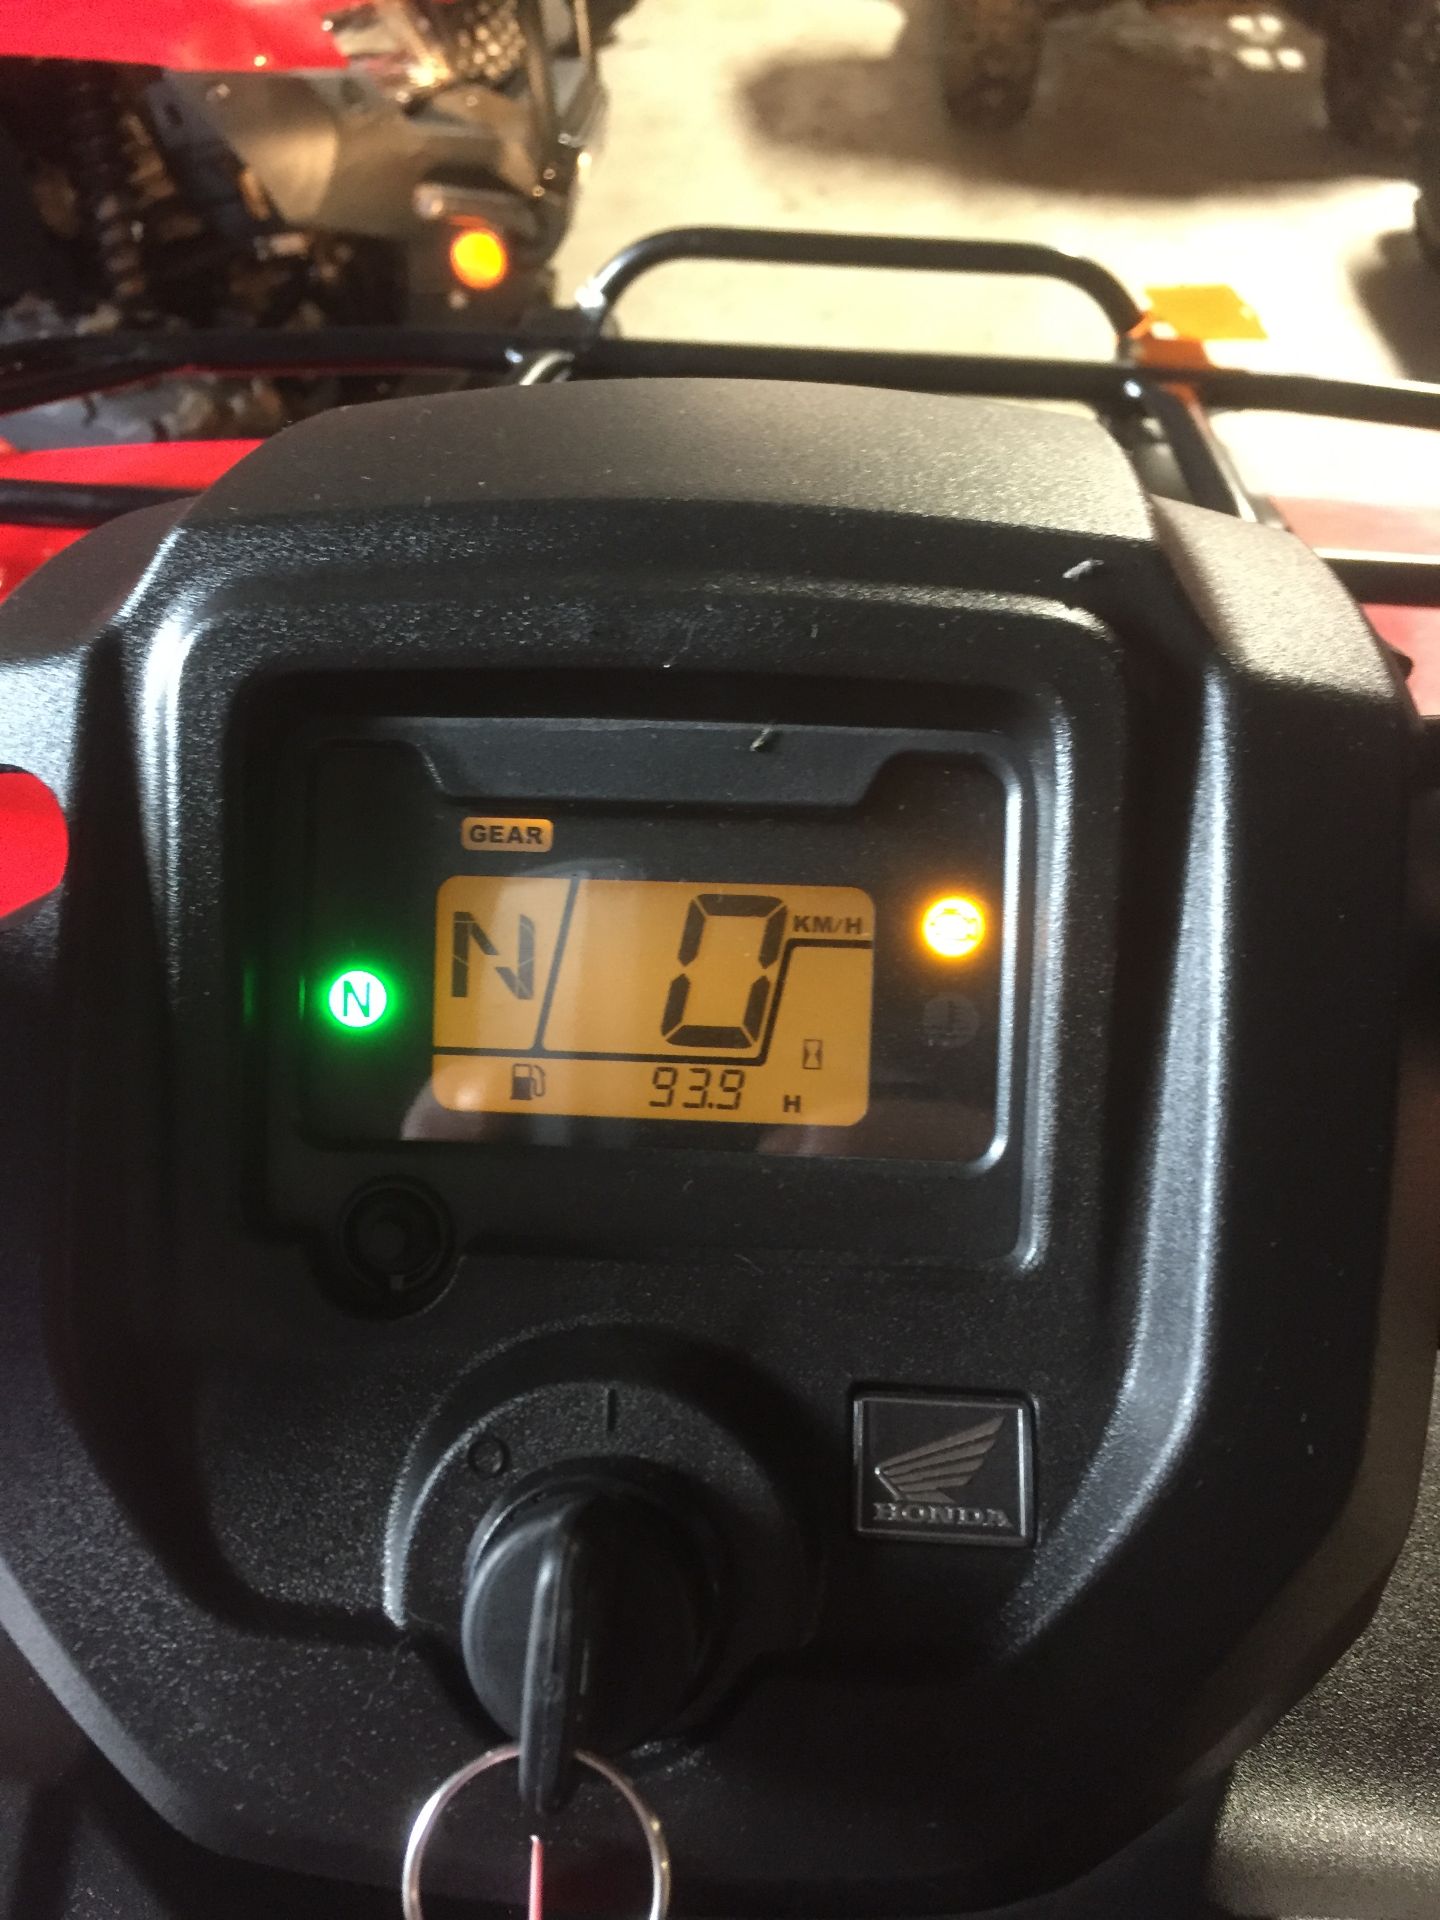 Honda TRX420FE1 ATV (938 hours) (ex demo), Serial No. 1HFTE40A9J4400086 (2018) - Image 3 of 3